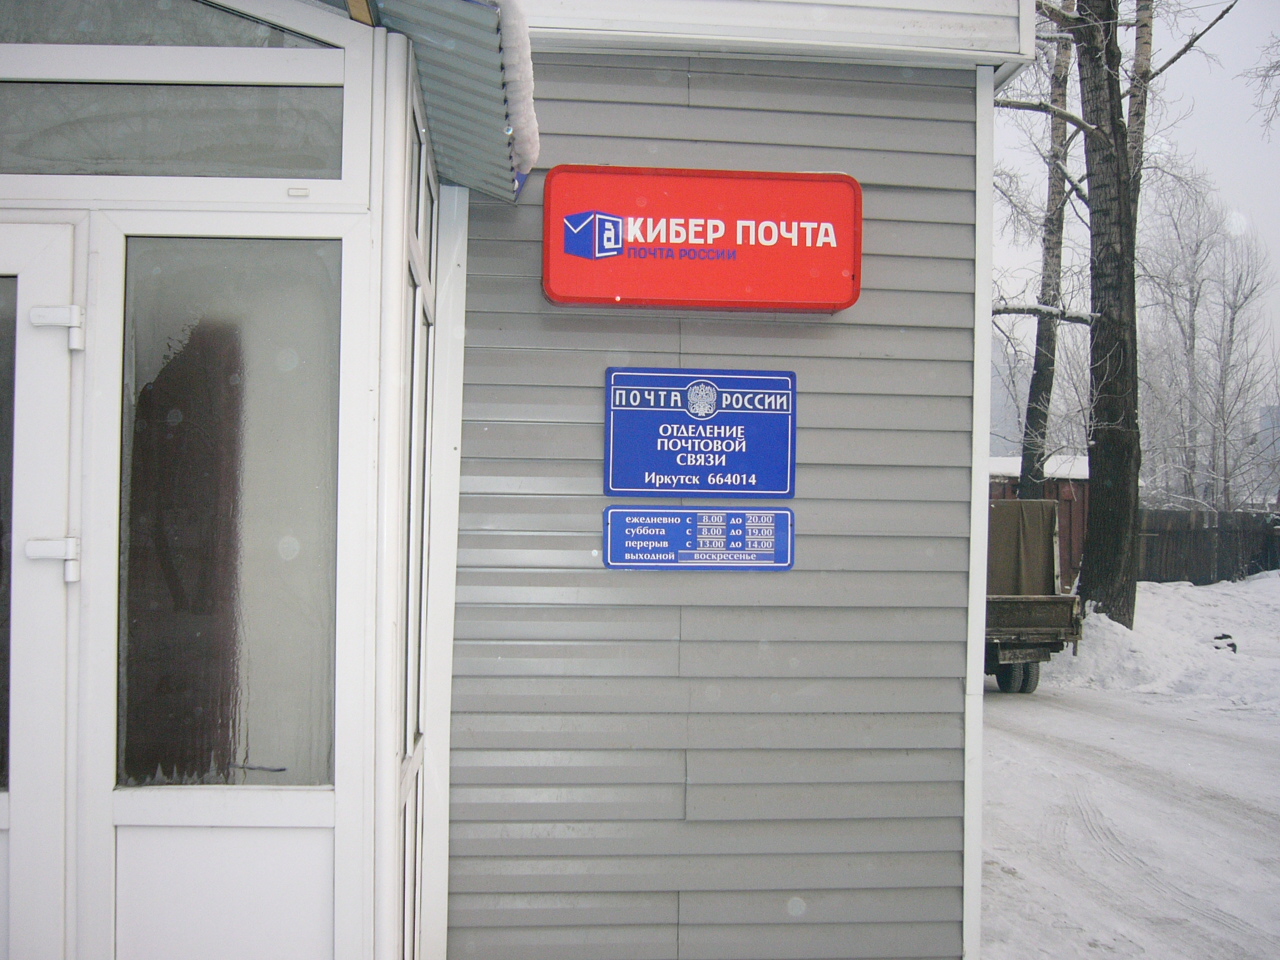 ВХОД, отделение почтовой связи 664014, Иркутская обл., Иркутск